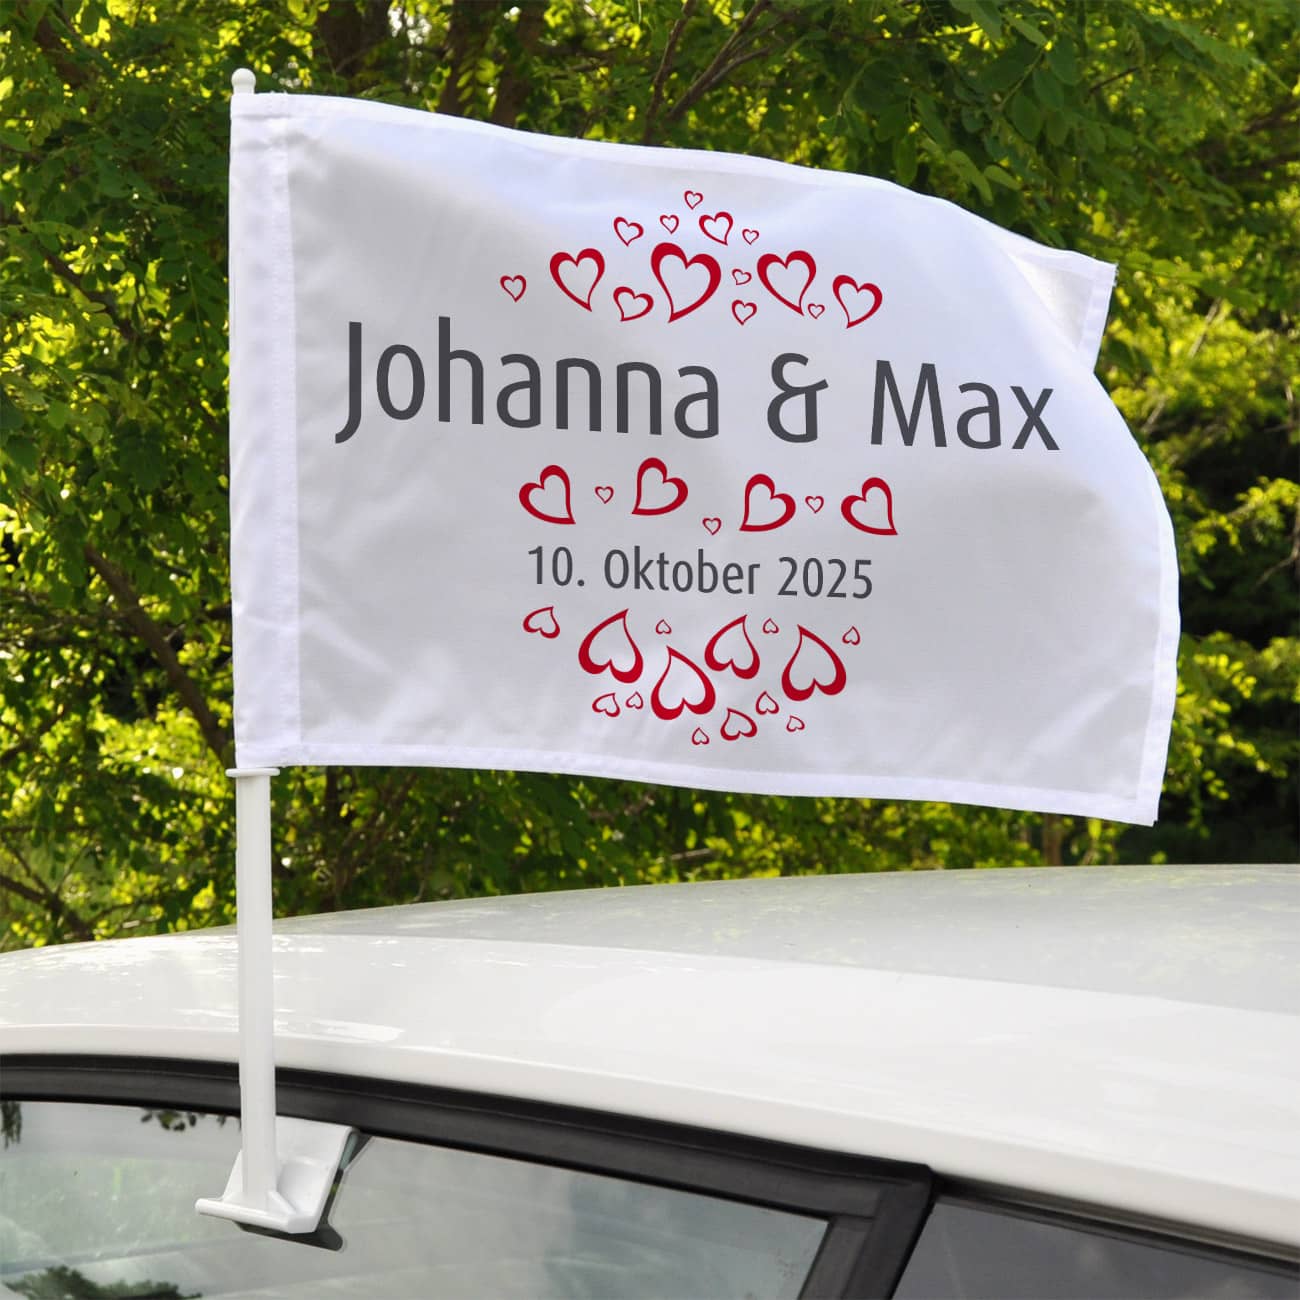 Flagge, Autofahne zur Hochzeit mit persönlichem Aufdruck von Namen